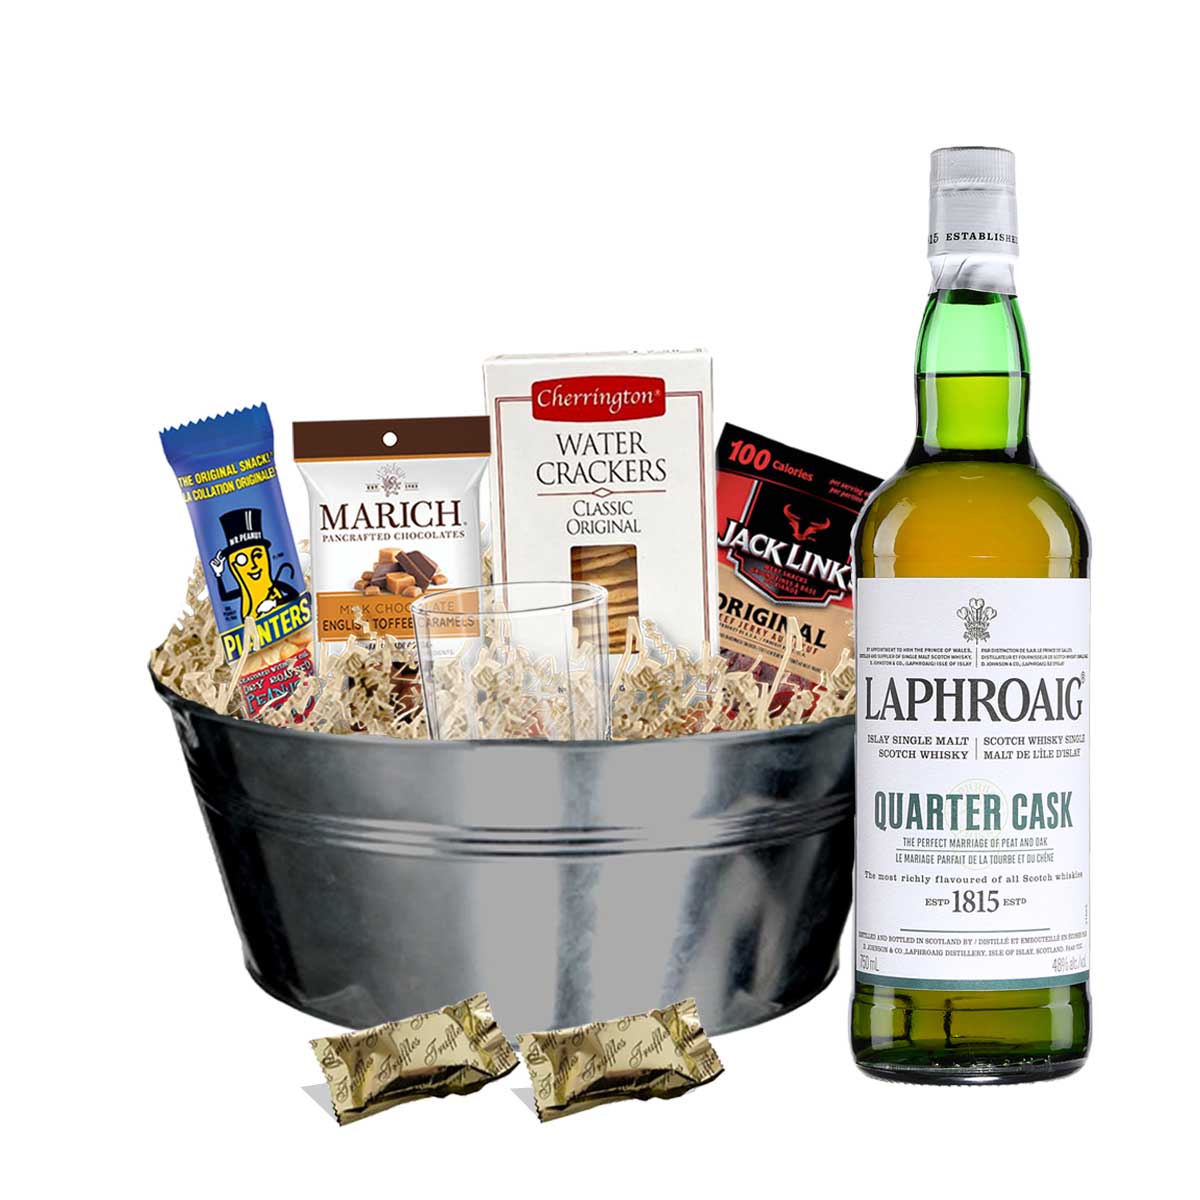 TAG Liquor Stores BC - Laphroaig Quarter Cask Scotch Whisky 750ml Gift Basket